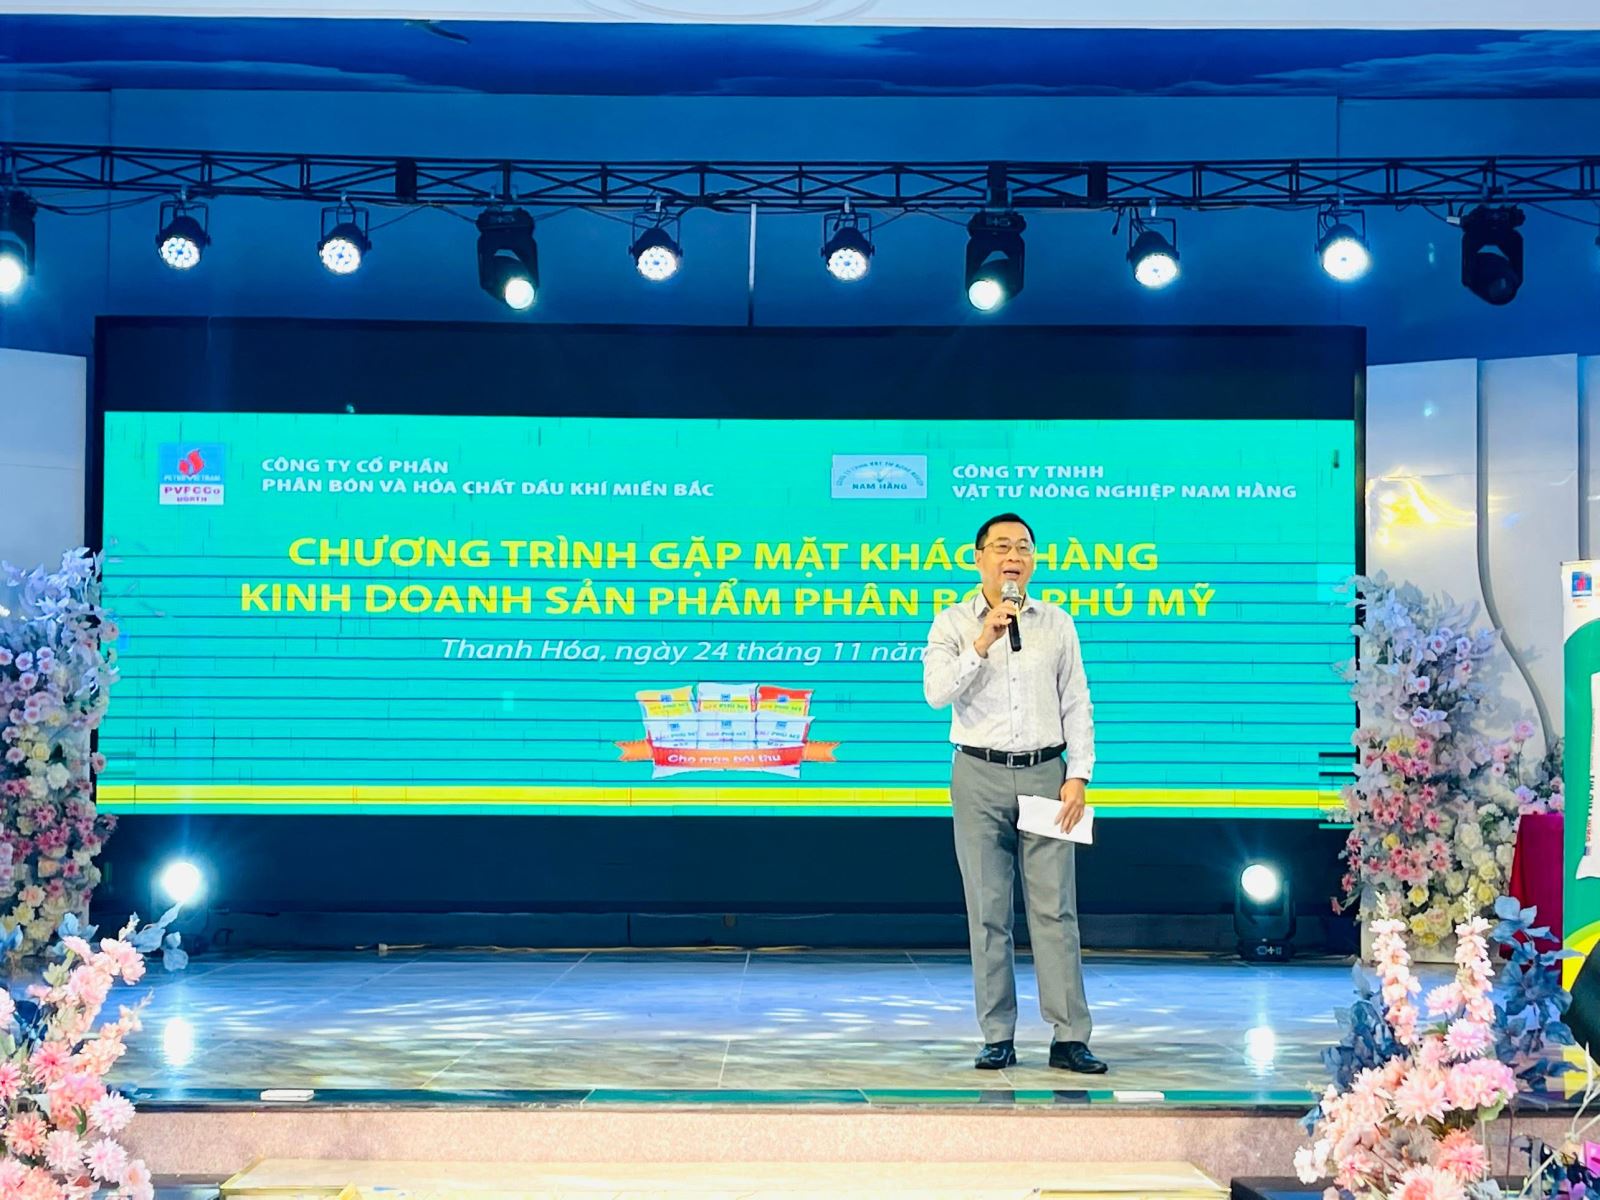 Công ty Cổ phần Phân bón và Hóa chất Dầu khí miền Bắc (PMB) tổ chức chuỗi chương trình “Gặp mặt khách hàng kinh doanh sản phẩm Phân bón Phú Mỹ năm 2022” tại Thanh Hóa.